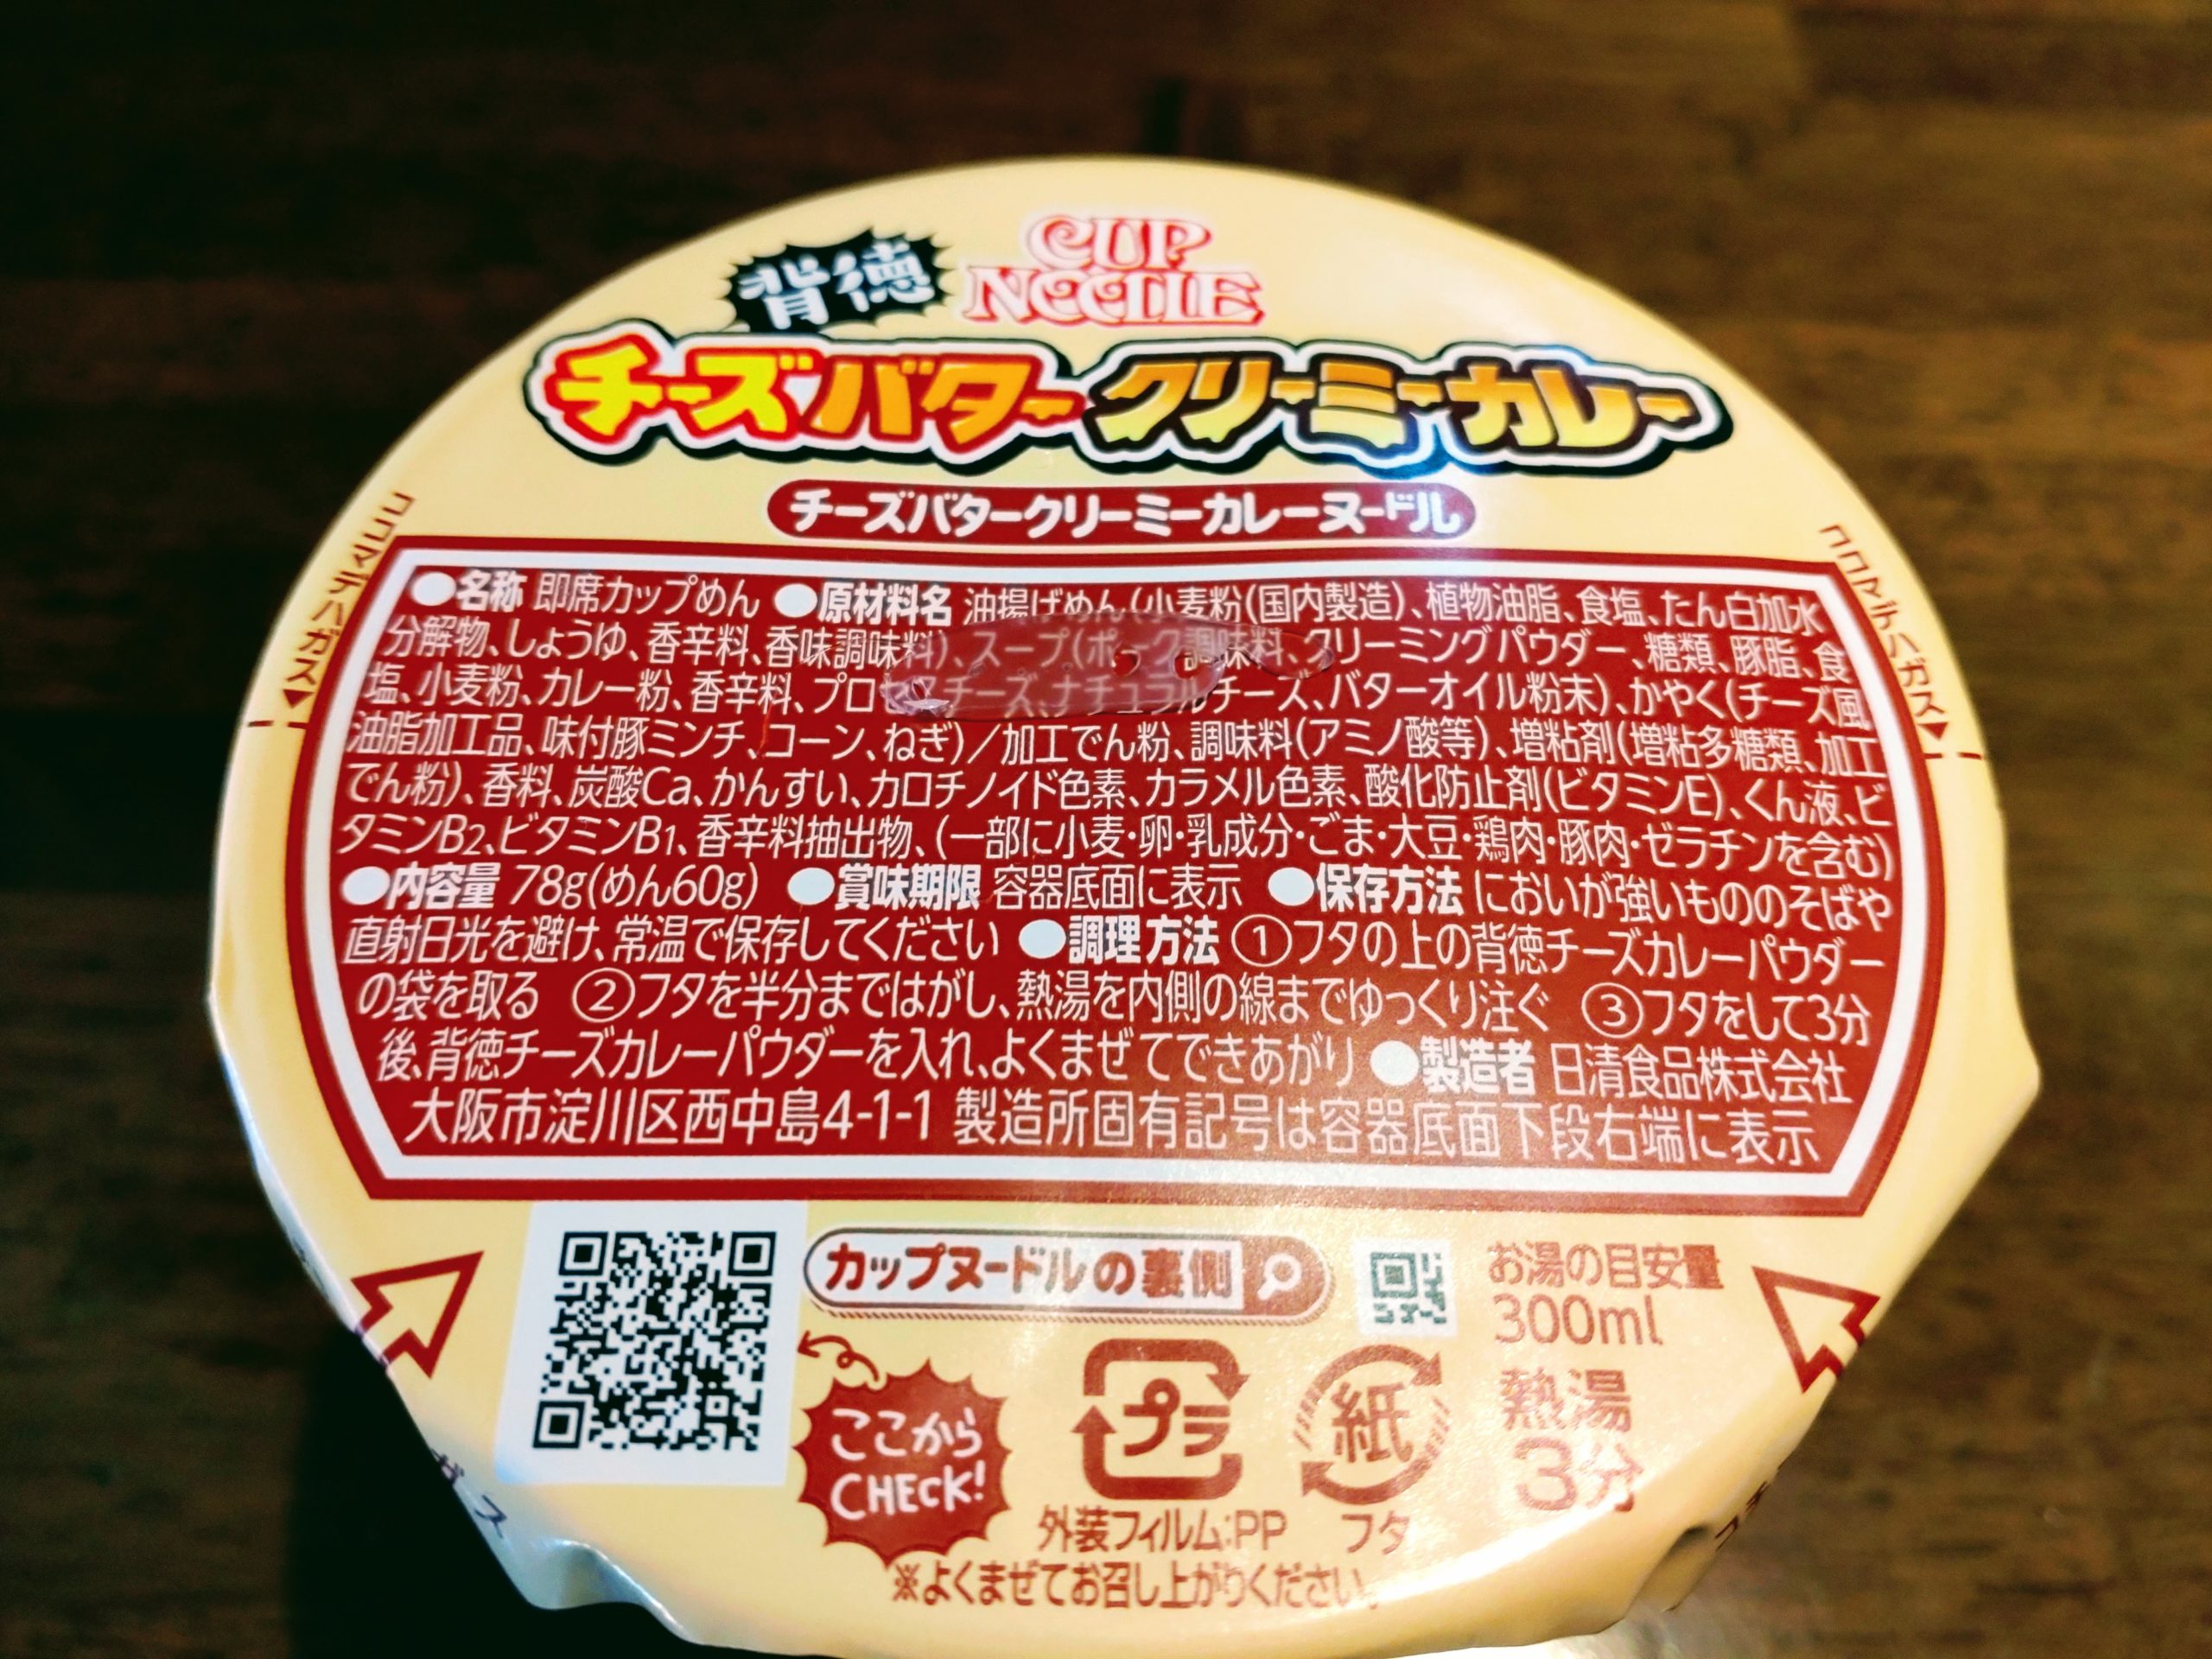 カップヌードル チーズバタークリーミーカレーの原材料名と内容量